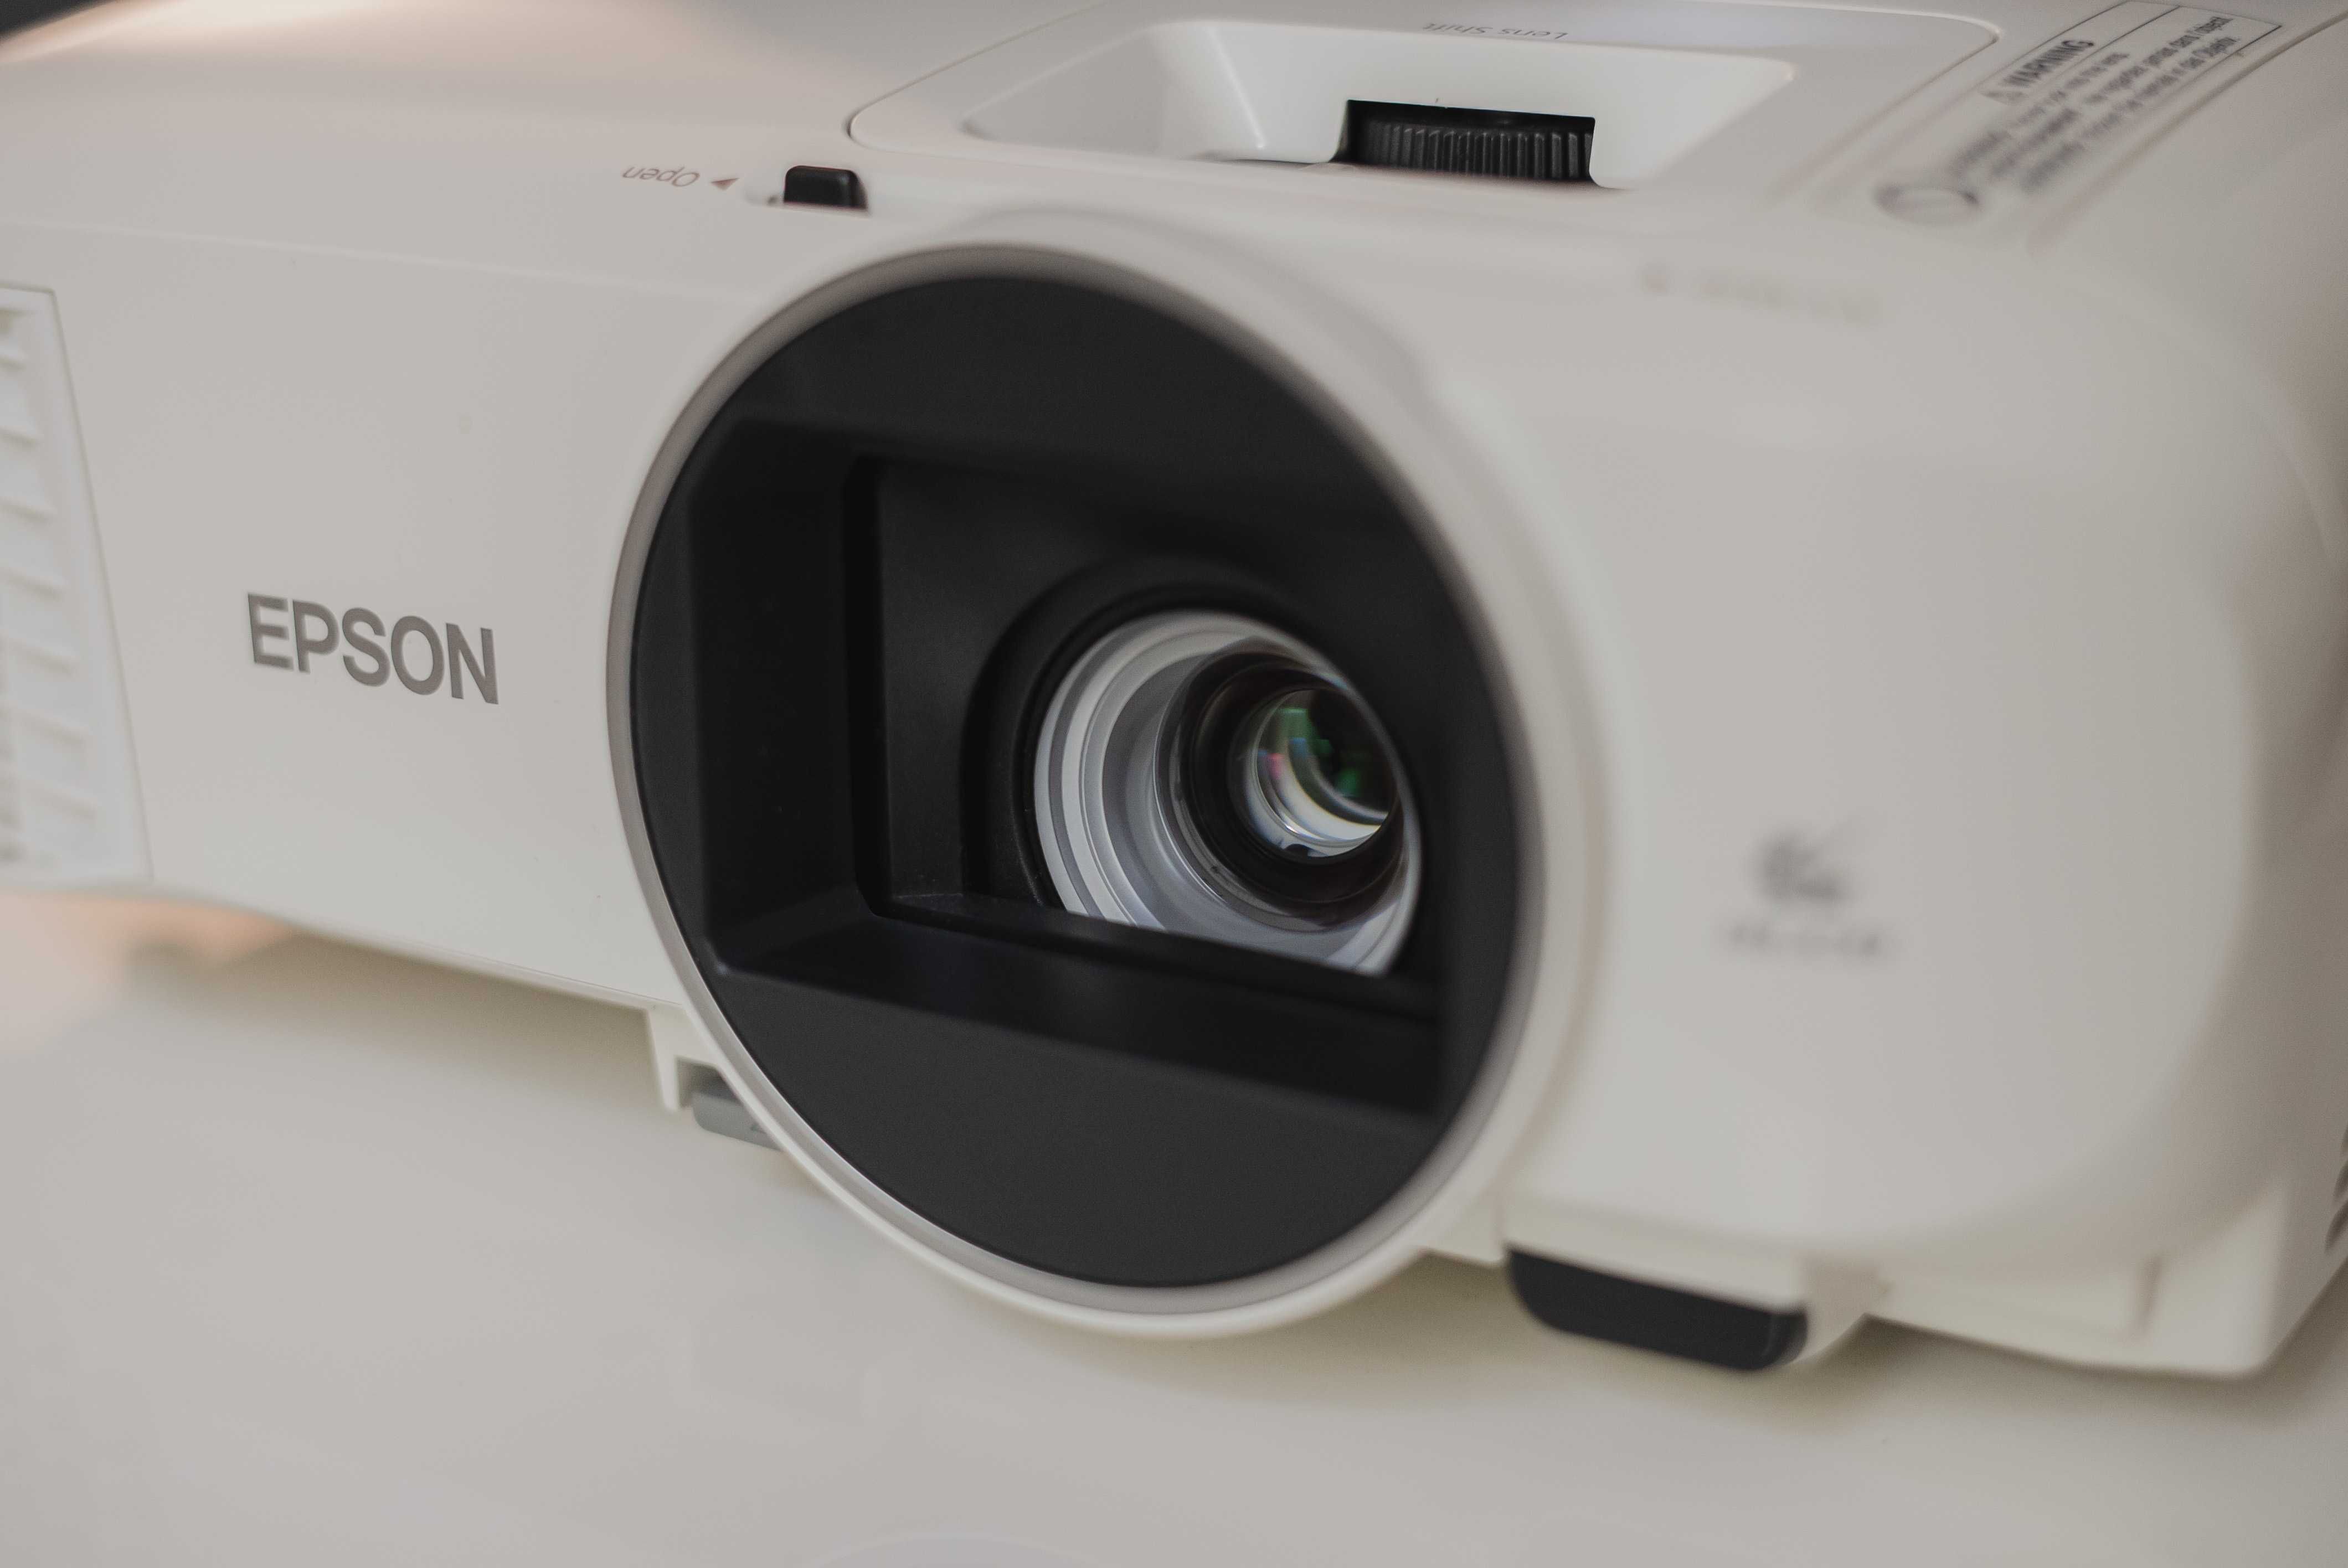 Projektor Epson EH-TW5600 - Jak nowy! Super stan ! Full HD 1080P